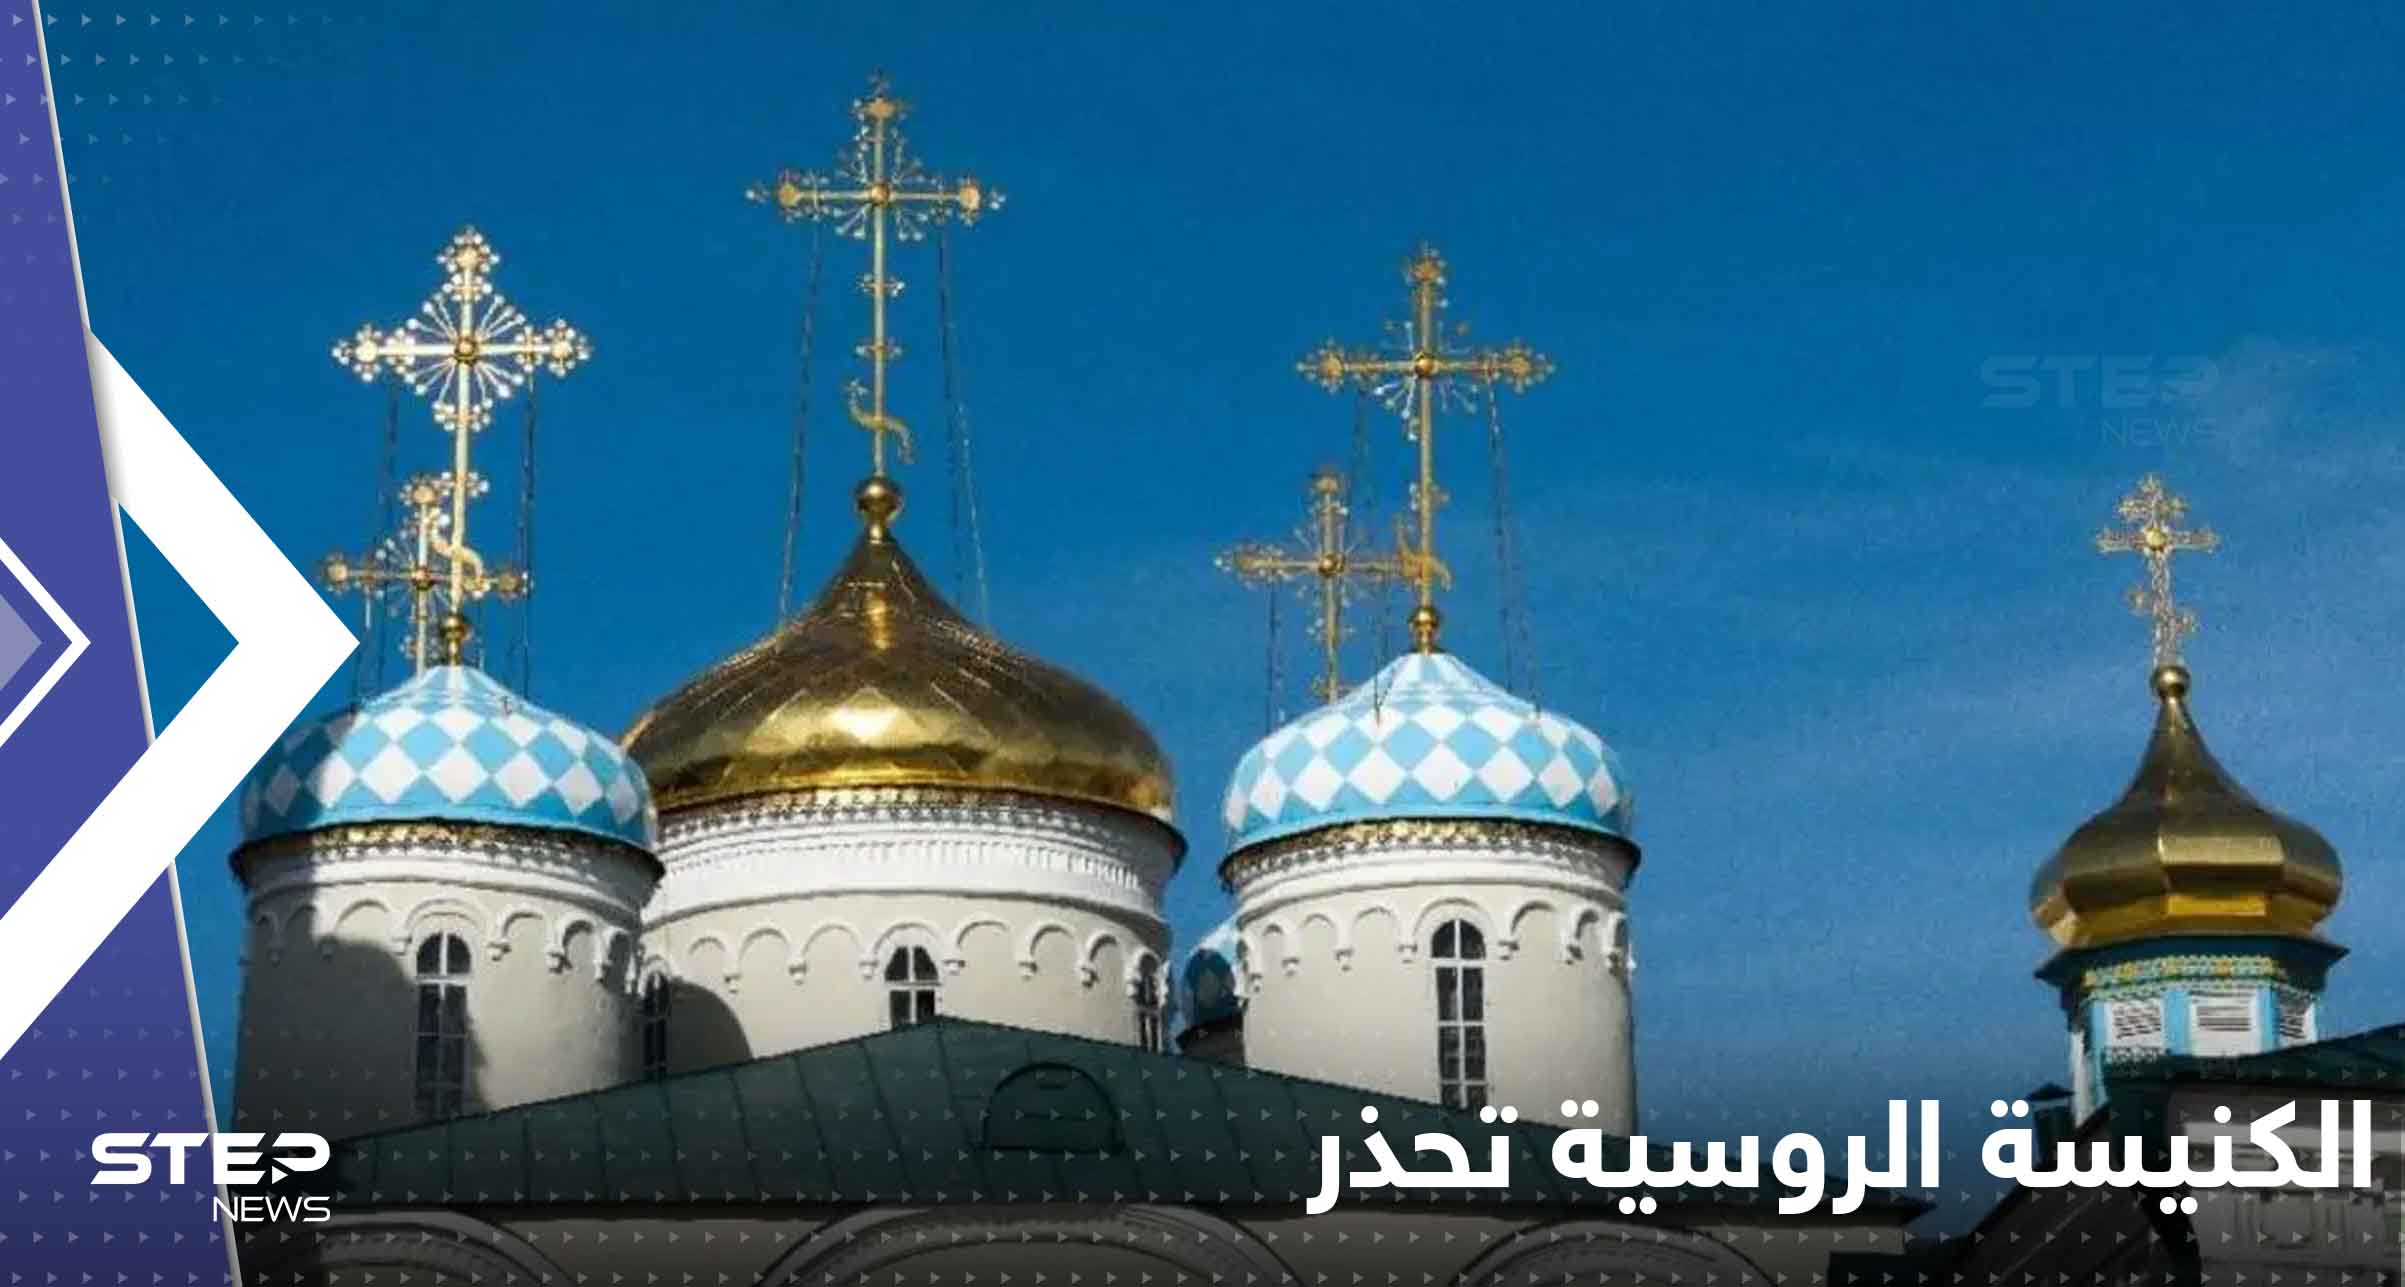 الكنيسة الروسية تحذر من عمل غربي قالت إنه "سيدمر البشرية"